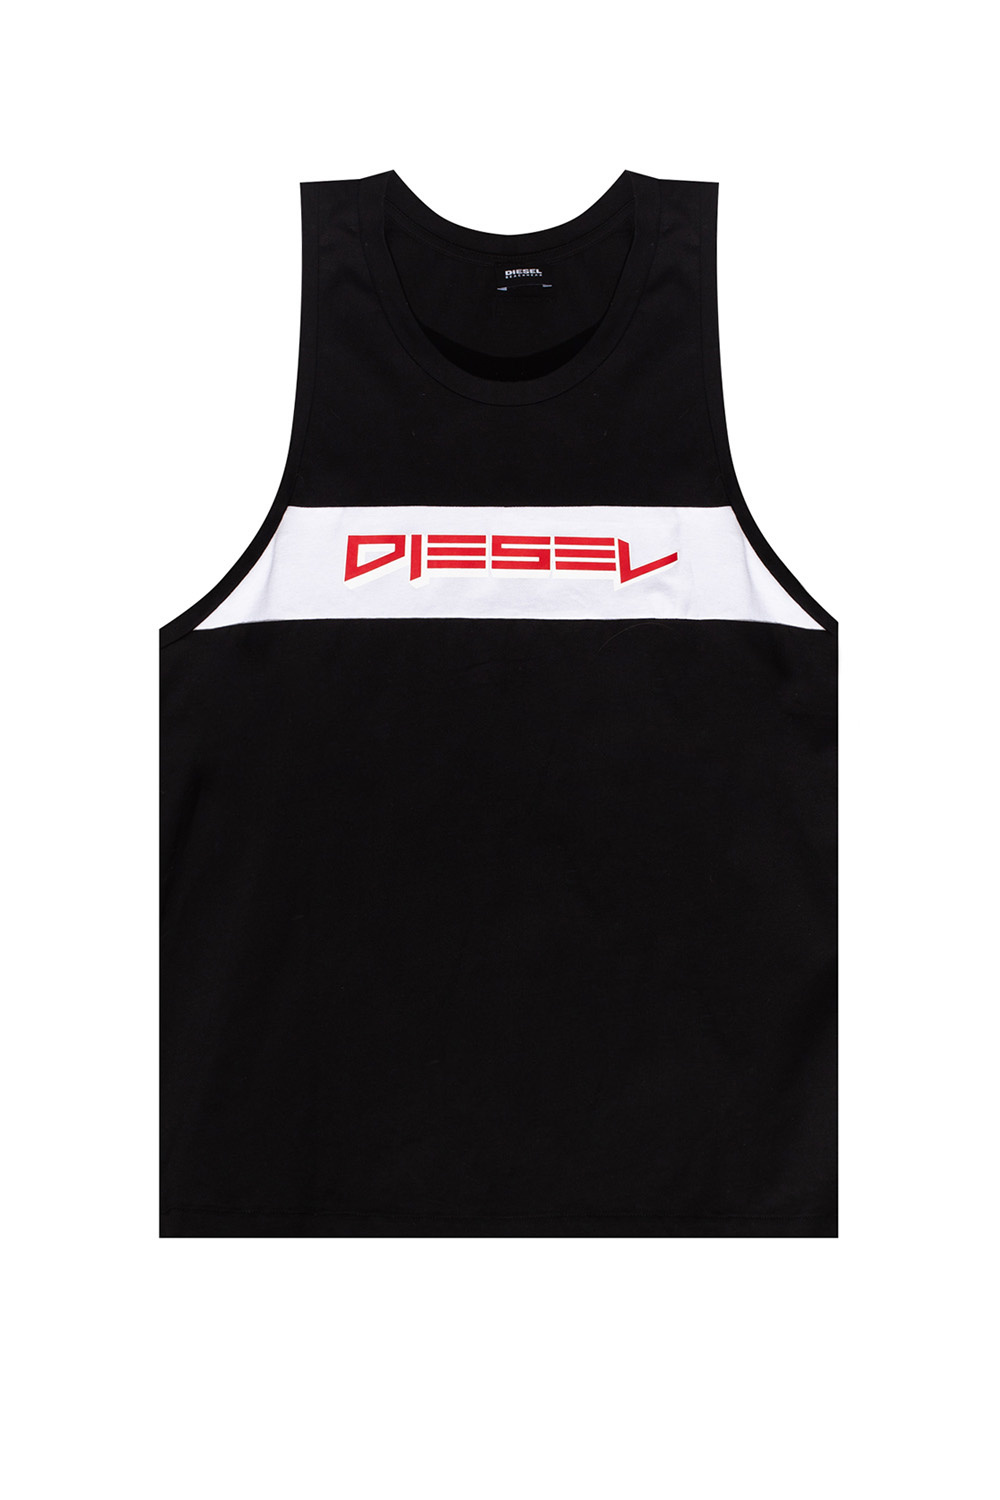 Diesel Tank top with logo | Men's Clothing | Vitkac